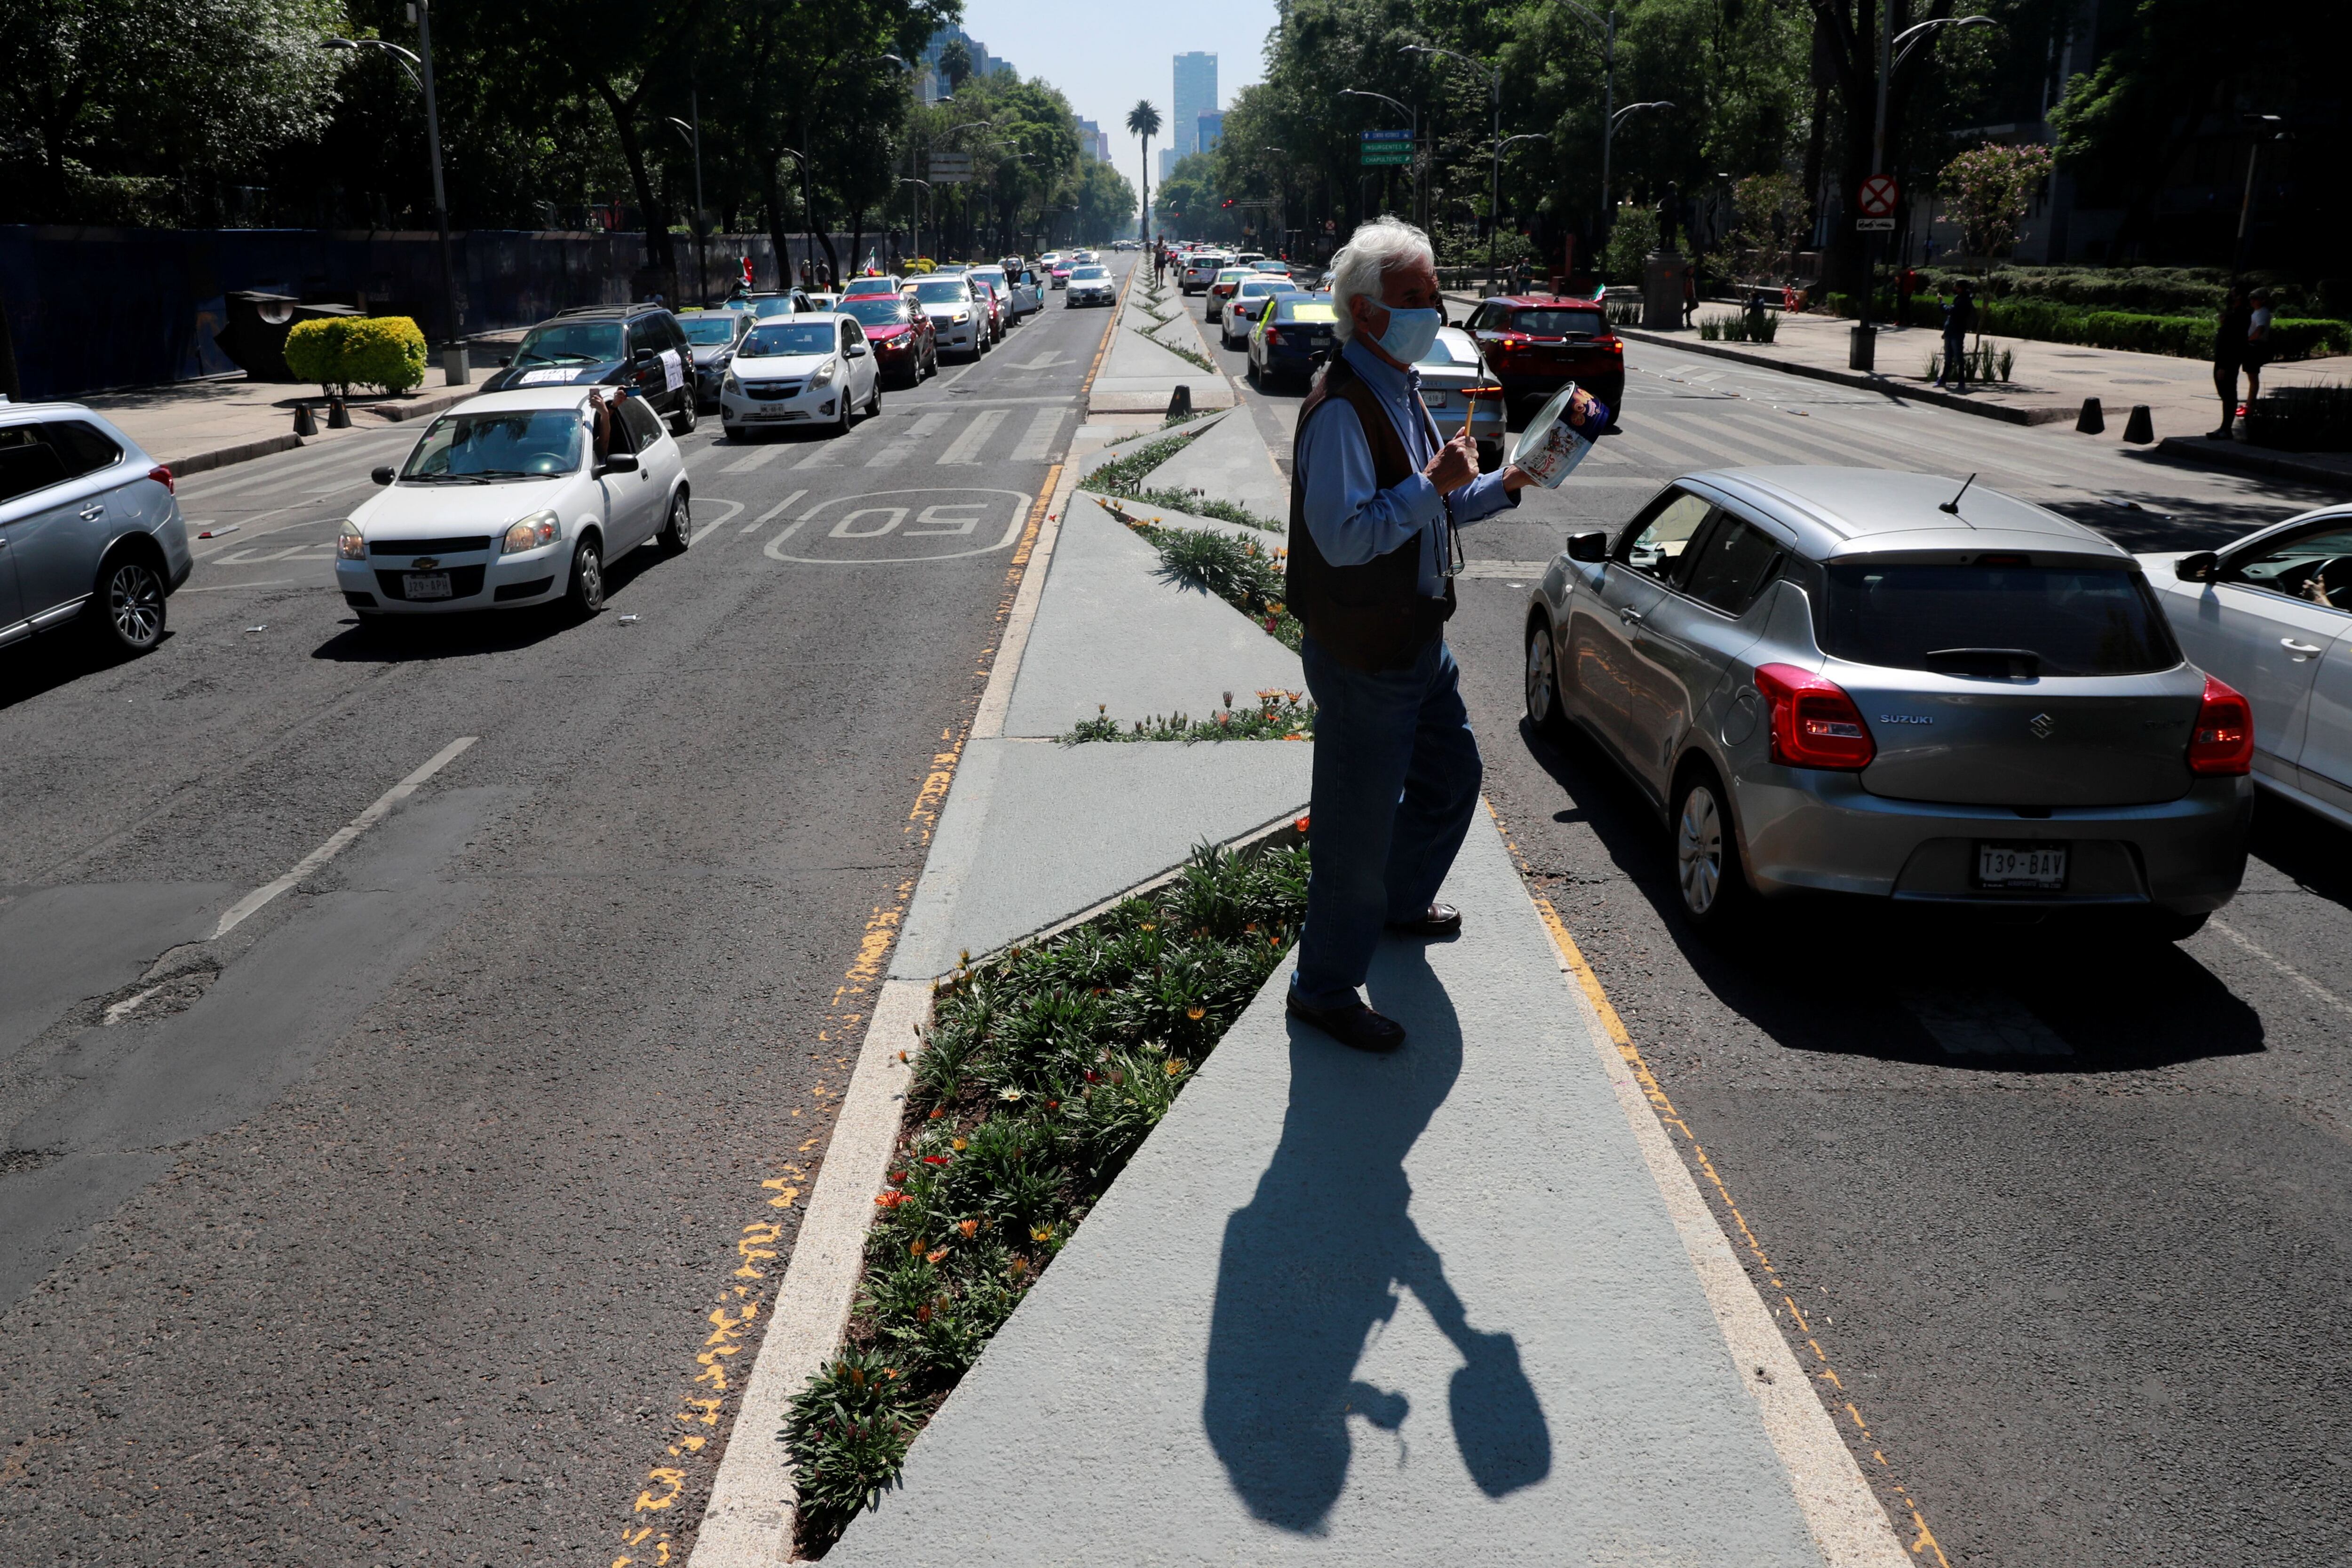 La caravana de autos recorrió Paseo de la Reforma (Foto: Reuters/Carlos Jasso)